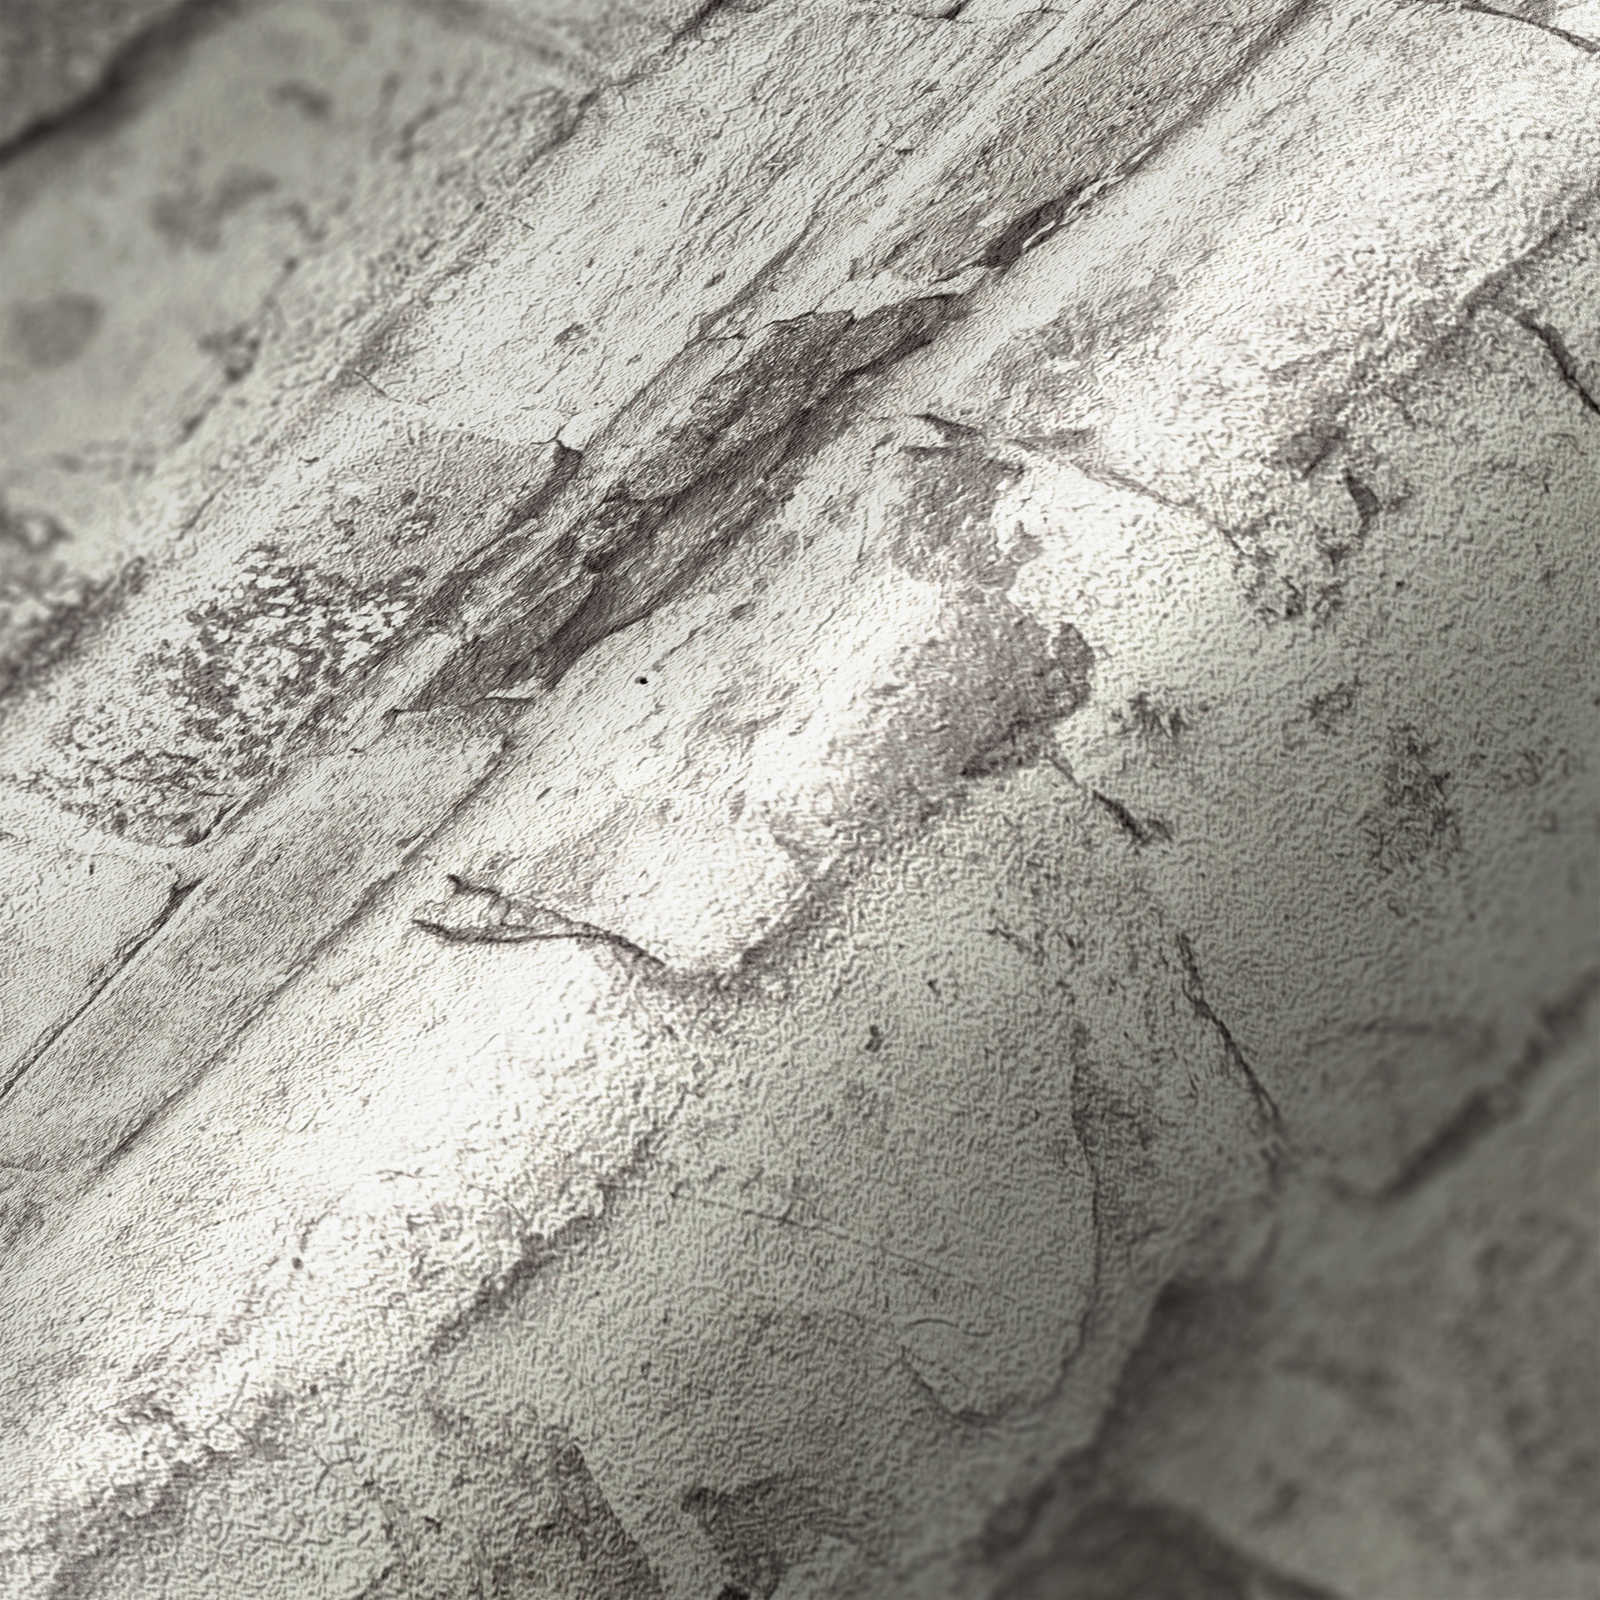             Ziegelmauer Vliestapete in Steinoptik – Grau, Grau, Weiß
        